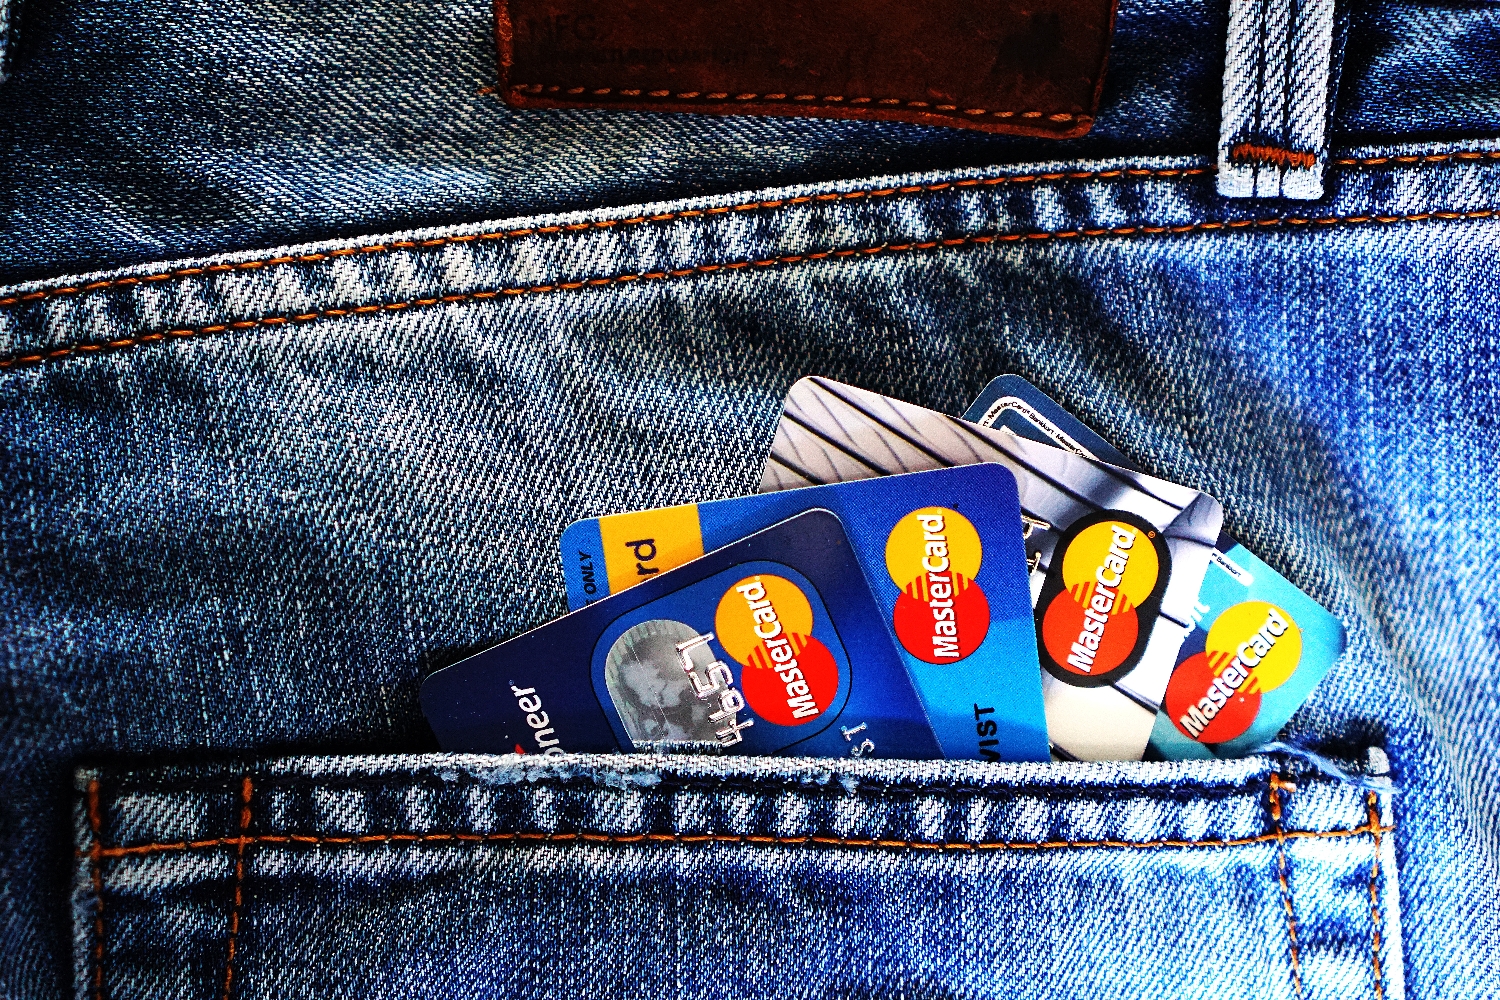 Mastercard integruje kryptoměny napříč celou svou platební sítí